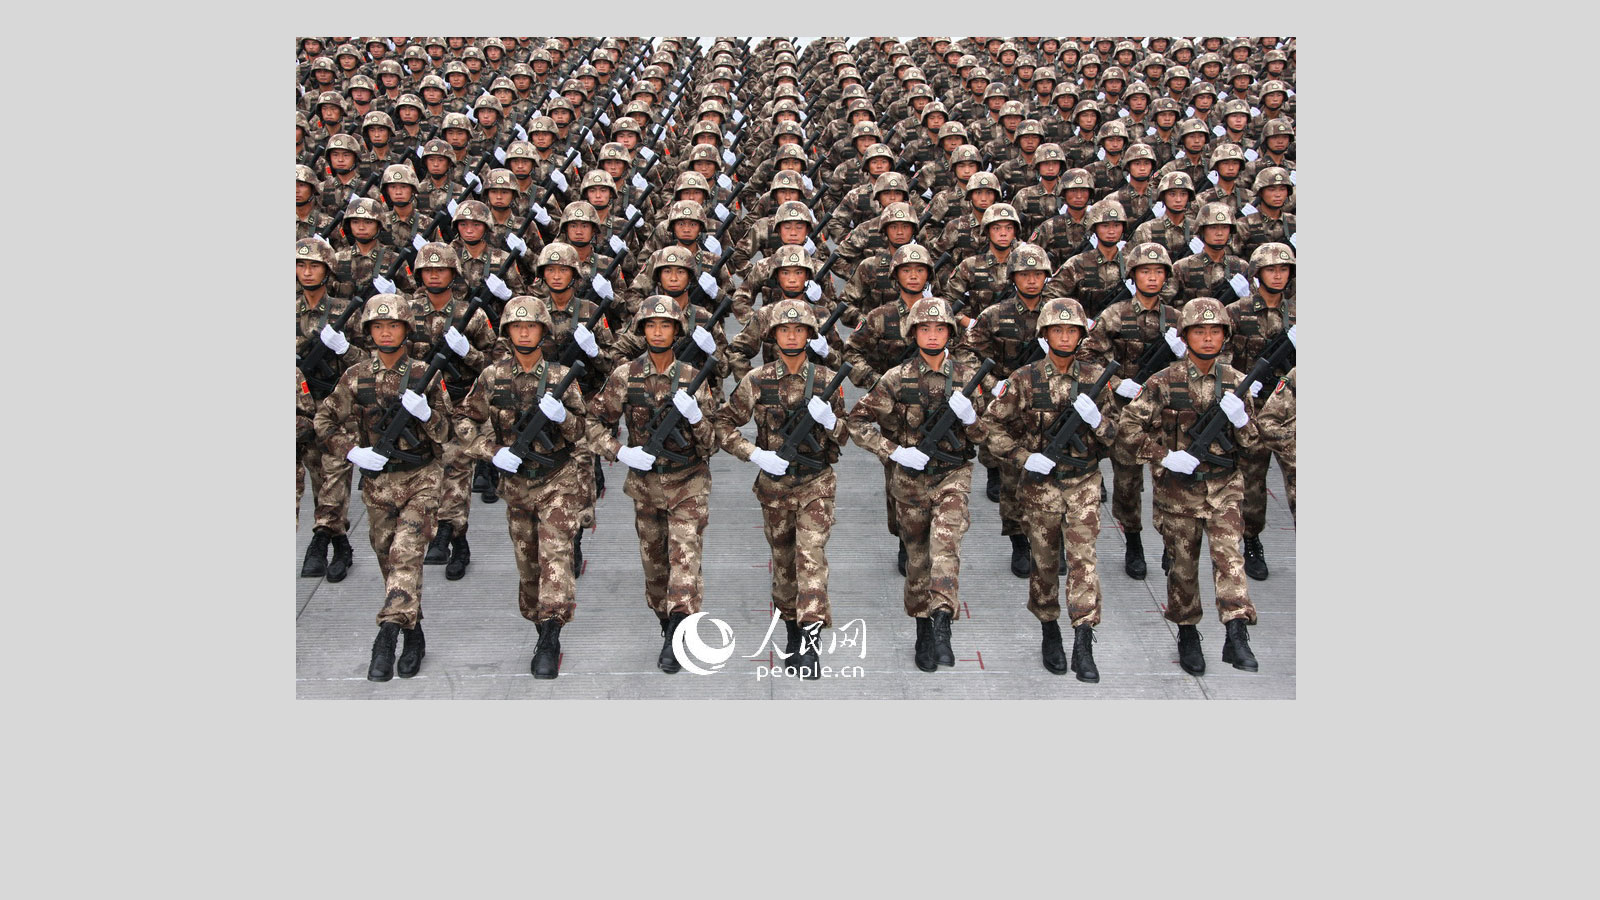 行动的步兵 库存图片. 图片 包括有 同志, 枪炮, 纵向, 责任, 衣裳, 肌力, 国家, 屏蔽, 字段 - 55352753